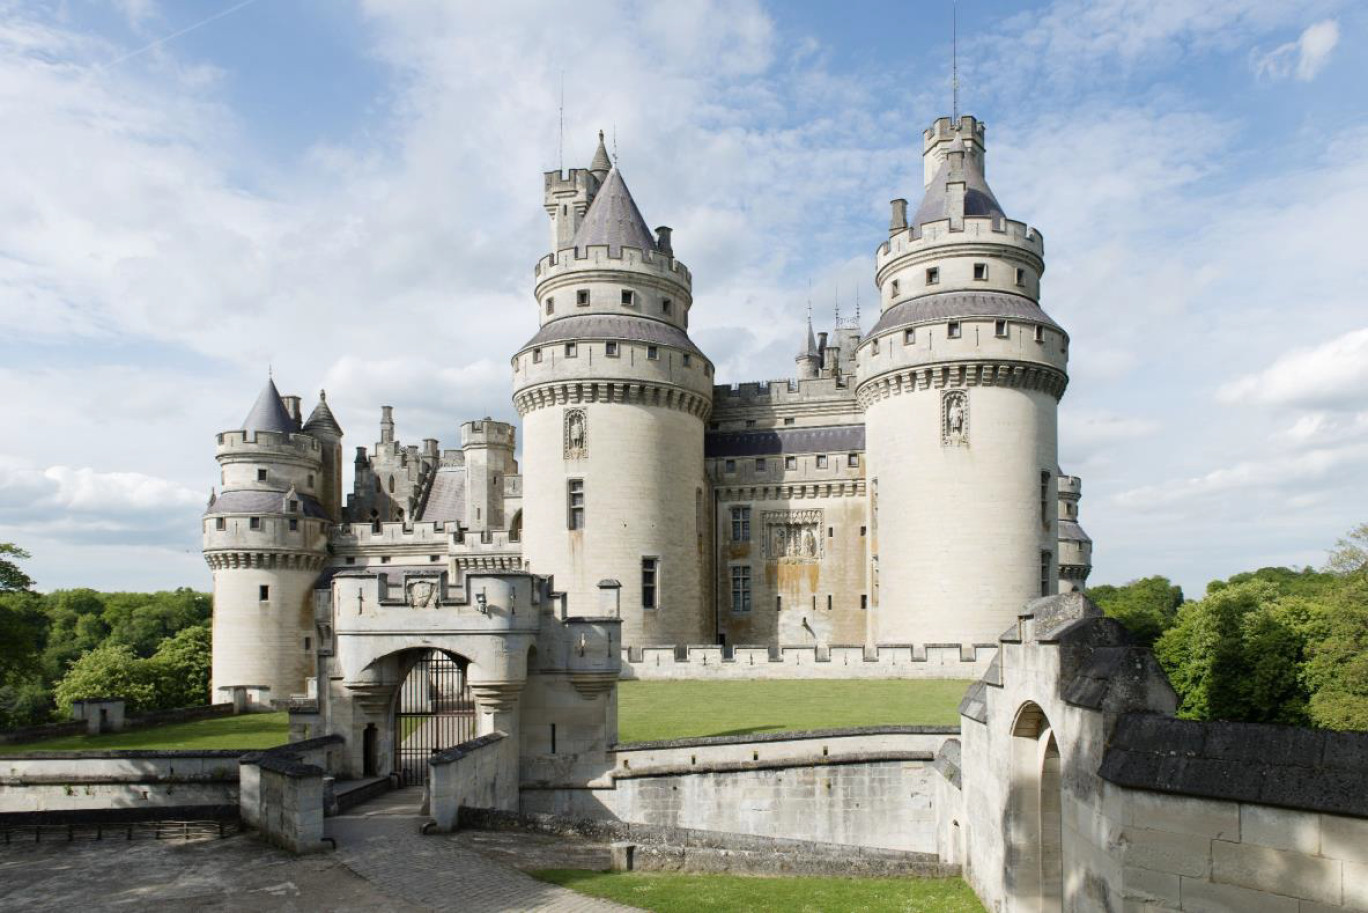 Depuis le 1er juin, et à fin septembre, le château de Pierrefonds a accueilli 54 000 visitesurs. (© CMN / Colombe Clier)